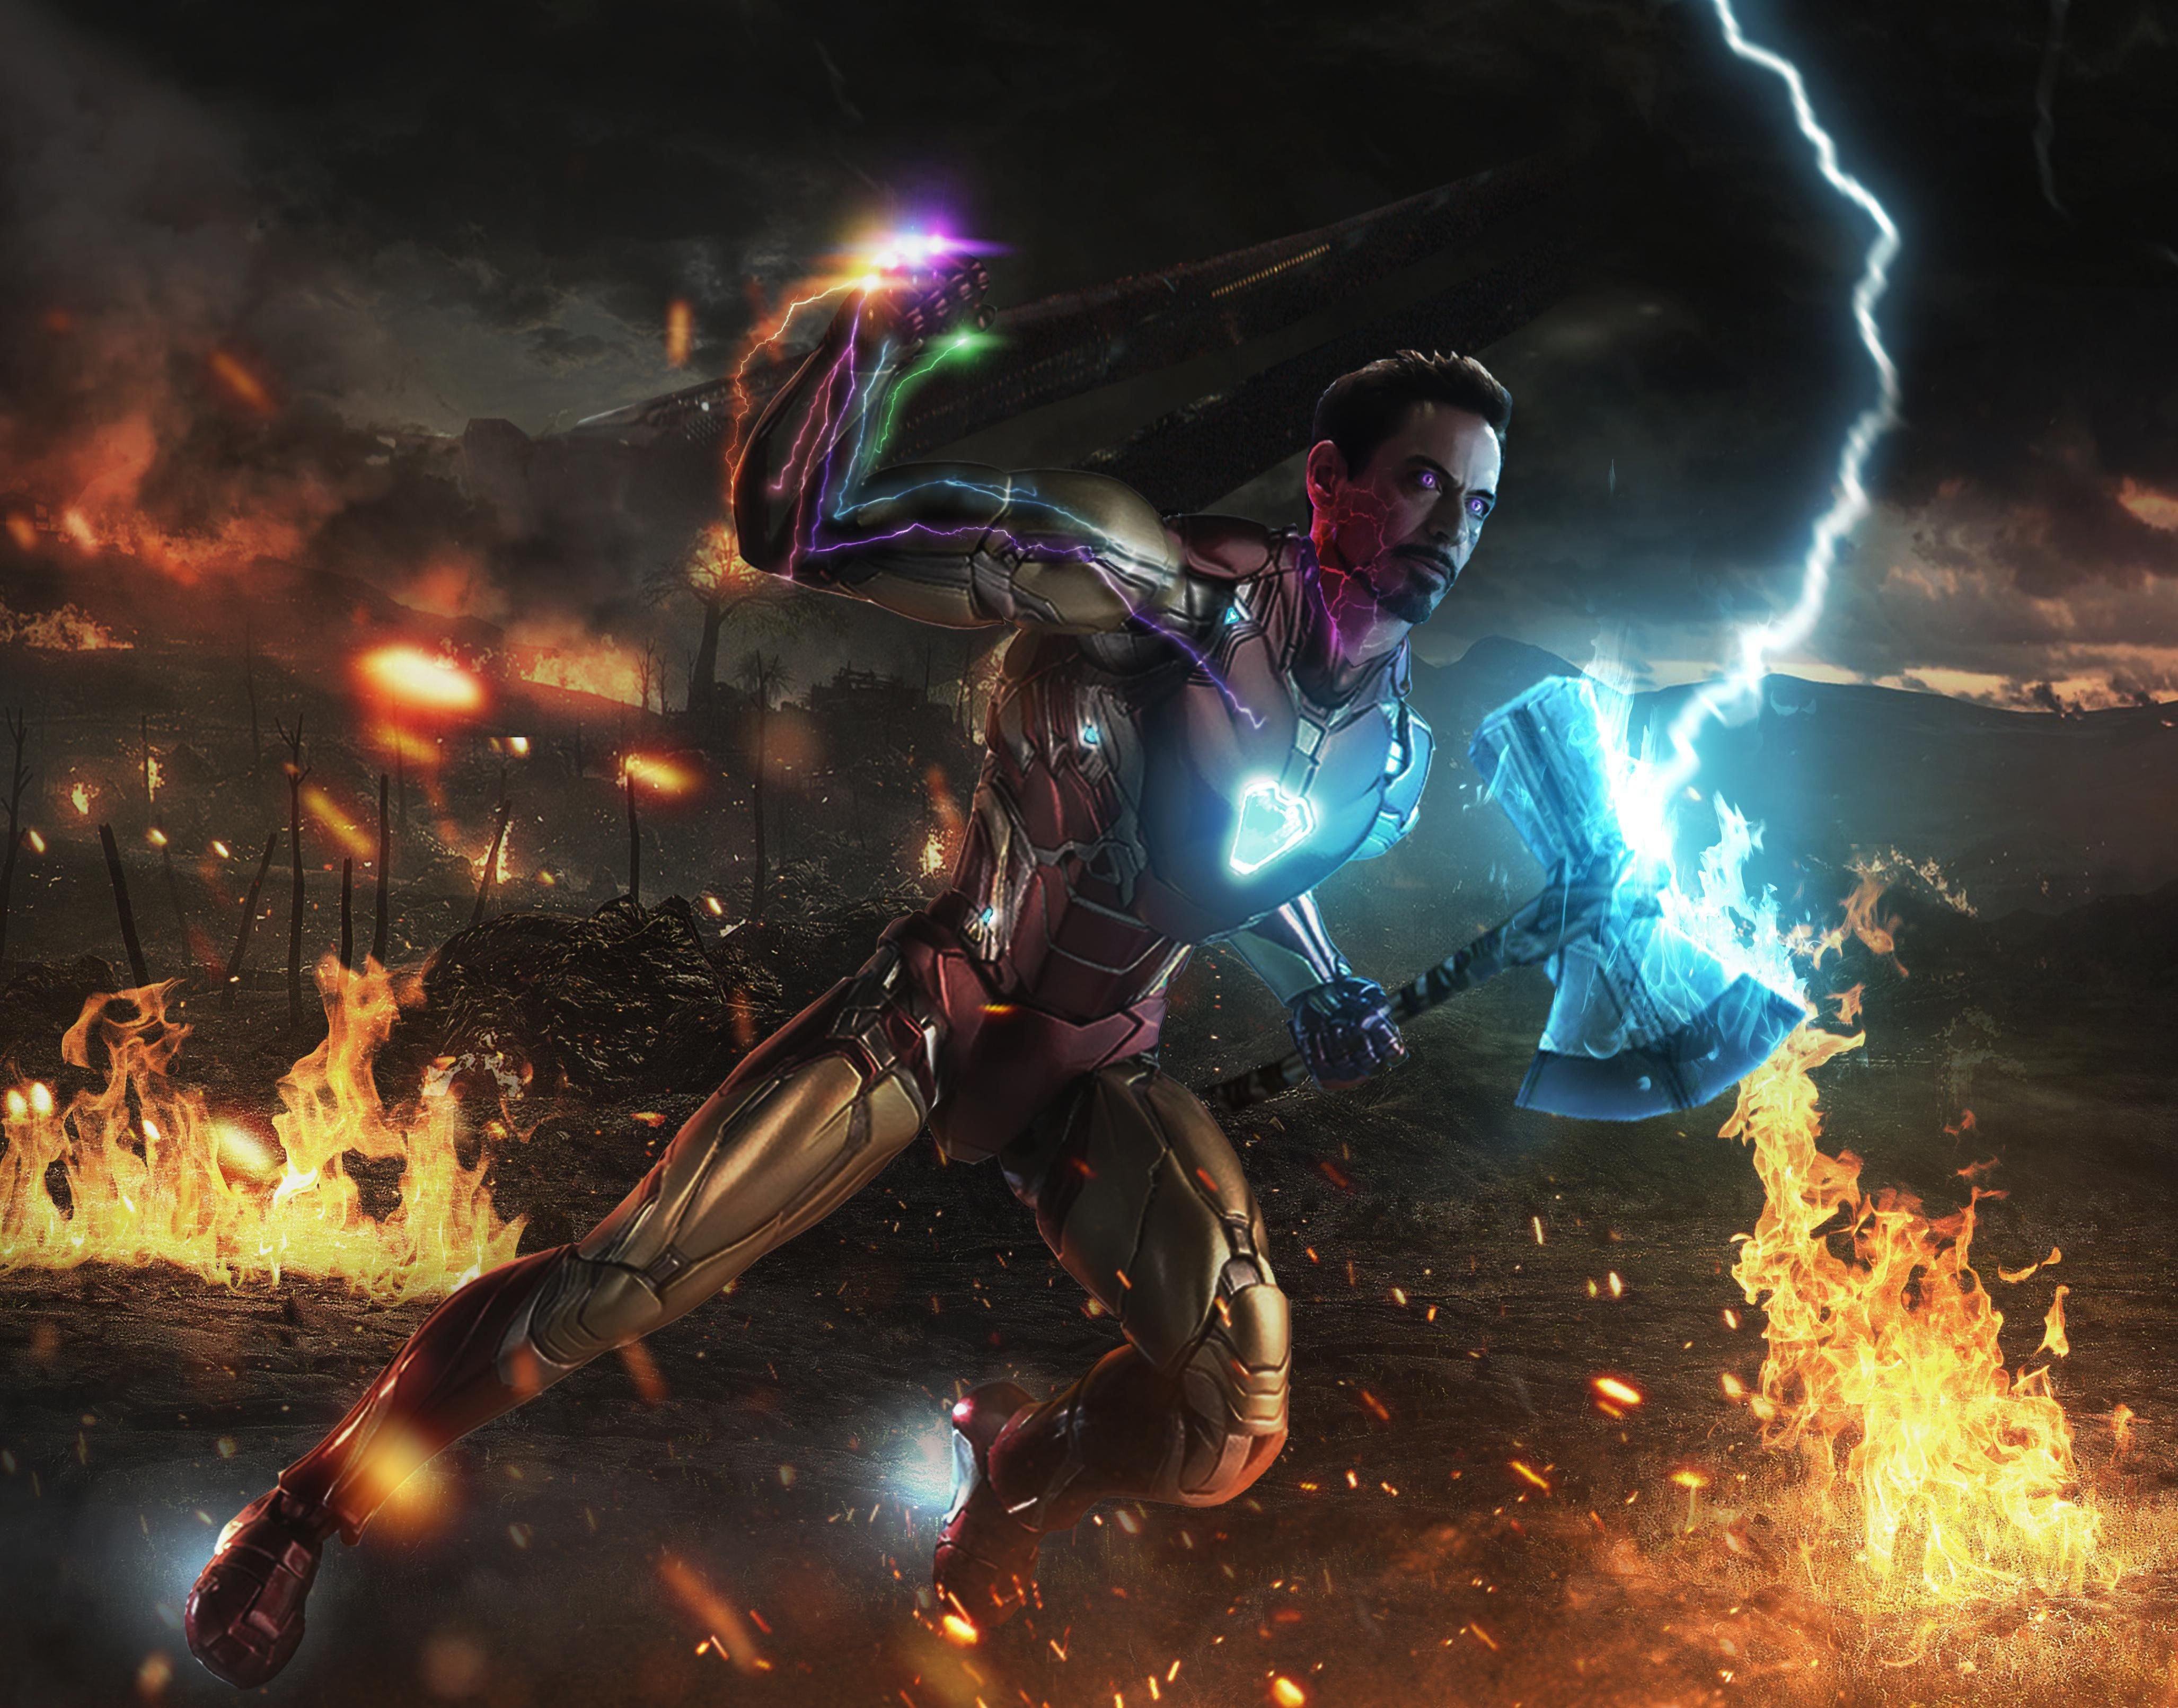 Iron Man Stormbreaker With Infinity Gauntlet, Action Adventure Game